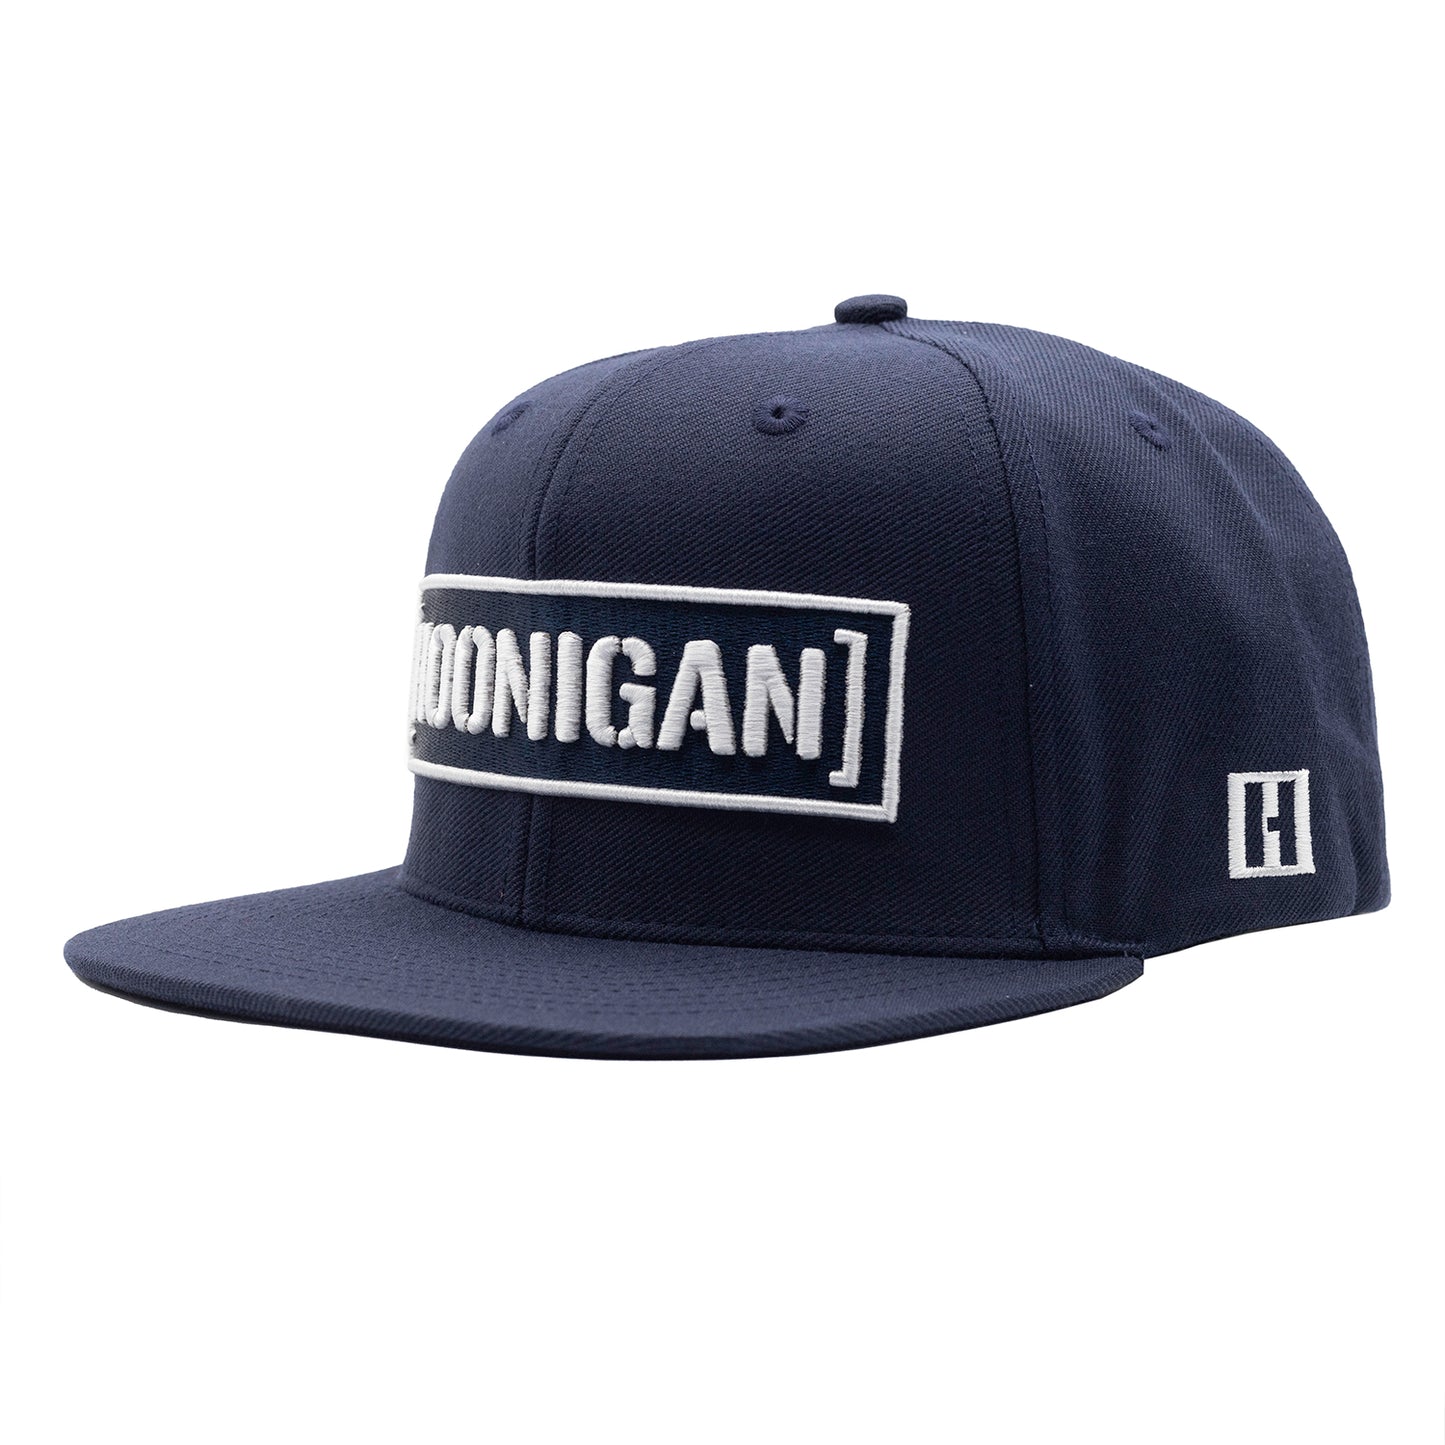 Hoonigan CENSOR BAR Snapback Hat